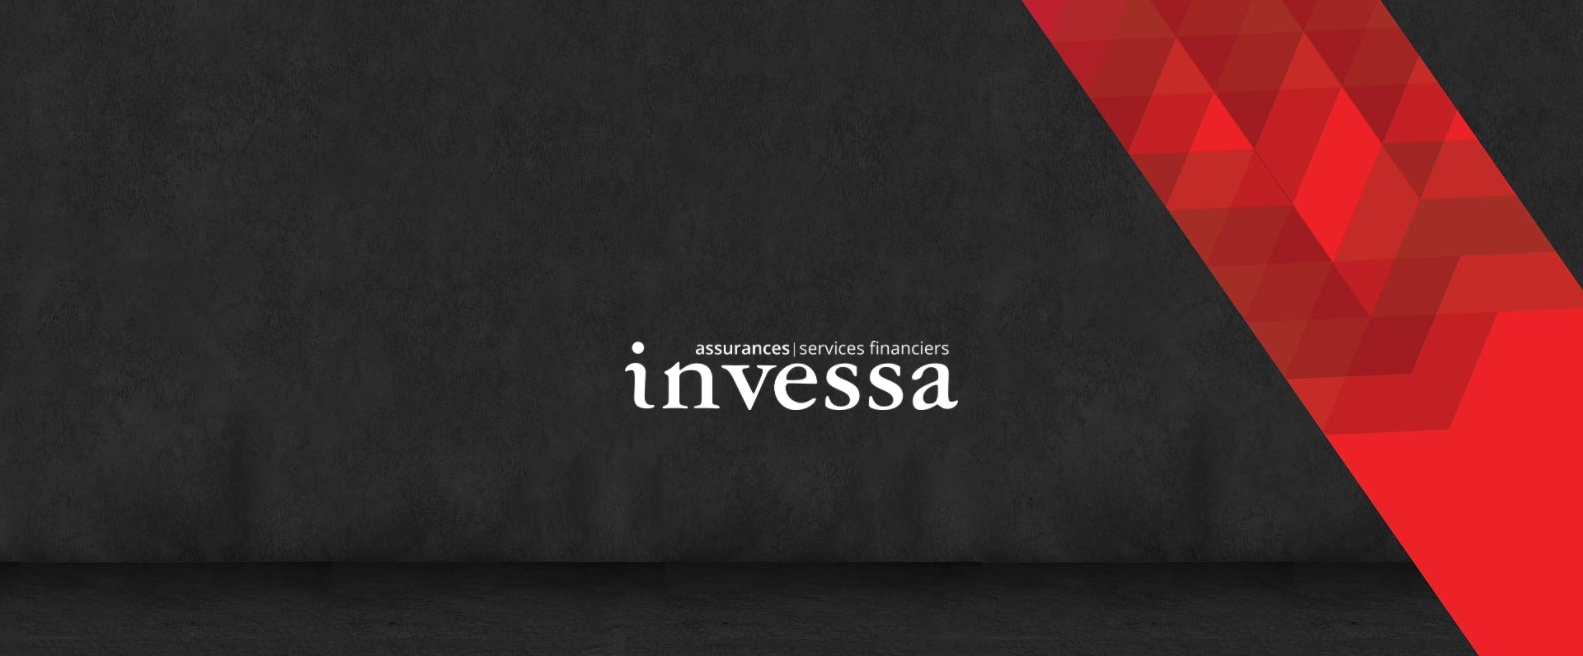 invessa - Courtier D’assurance